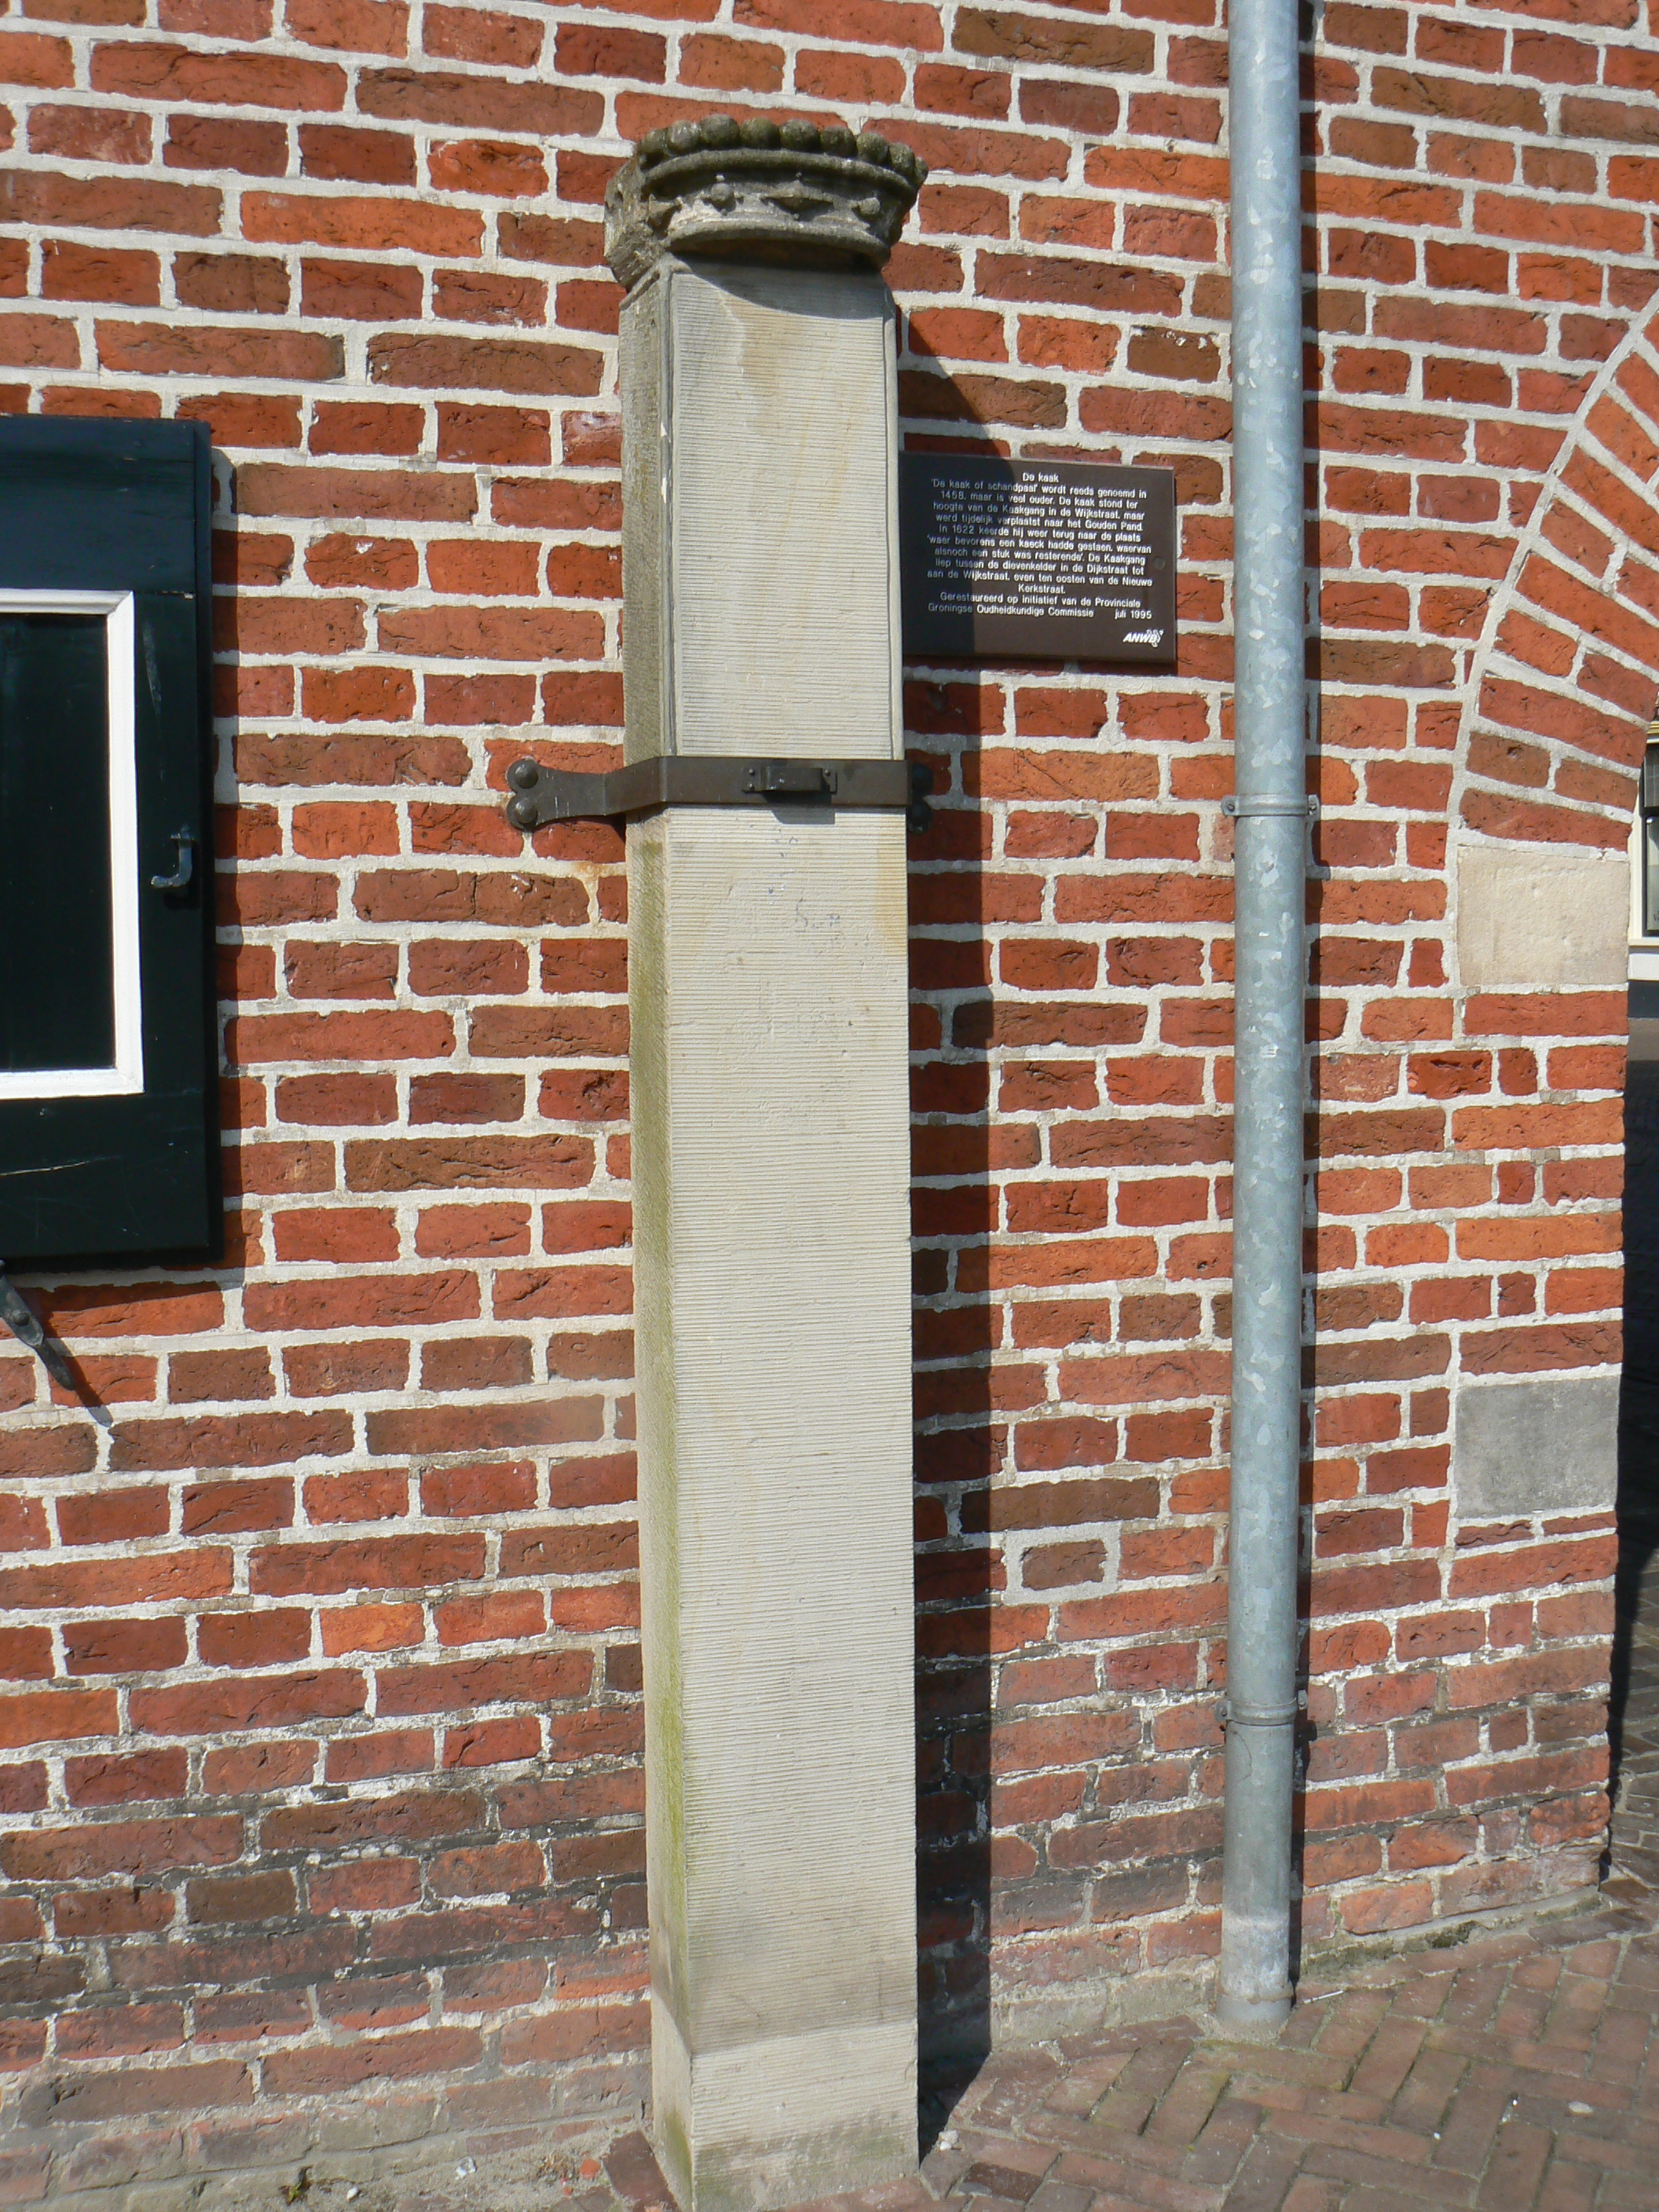 De schandpaal (Kaak) in Appingedam. De foto is gemaakt op 23 april 2008 door Gerardus, een maand na de dood van zijn vrouw Katja. Licentie: Public Domain.